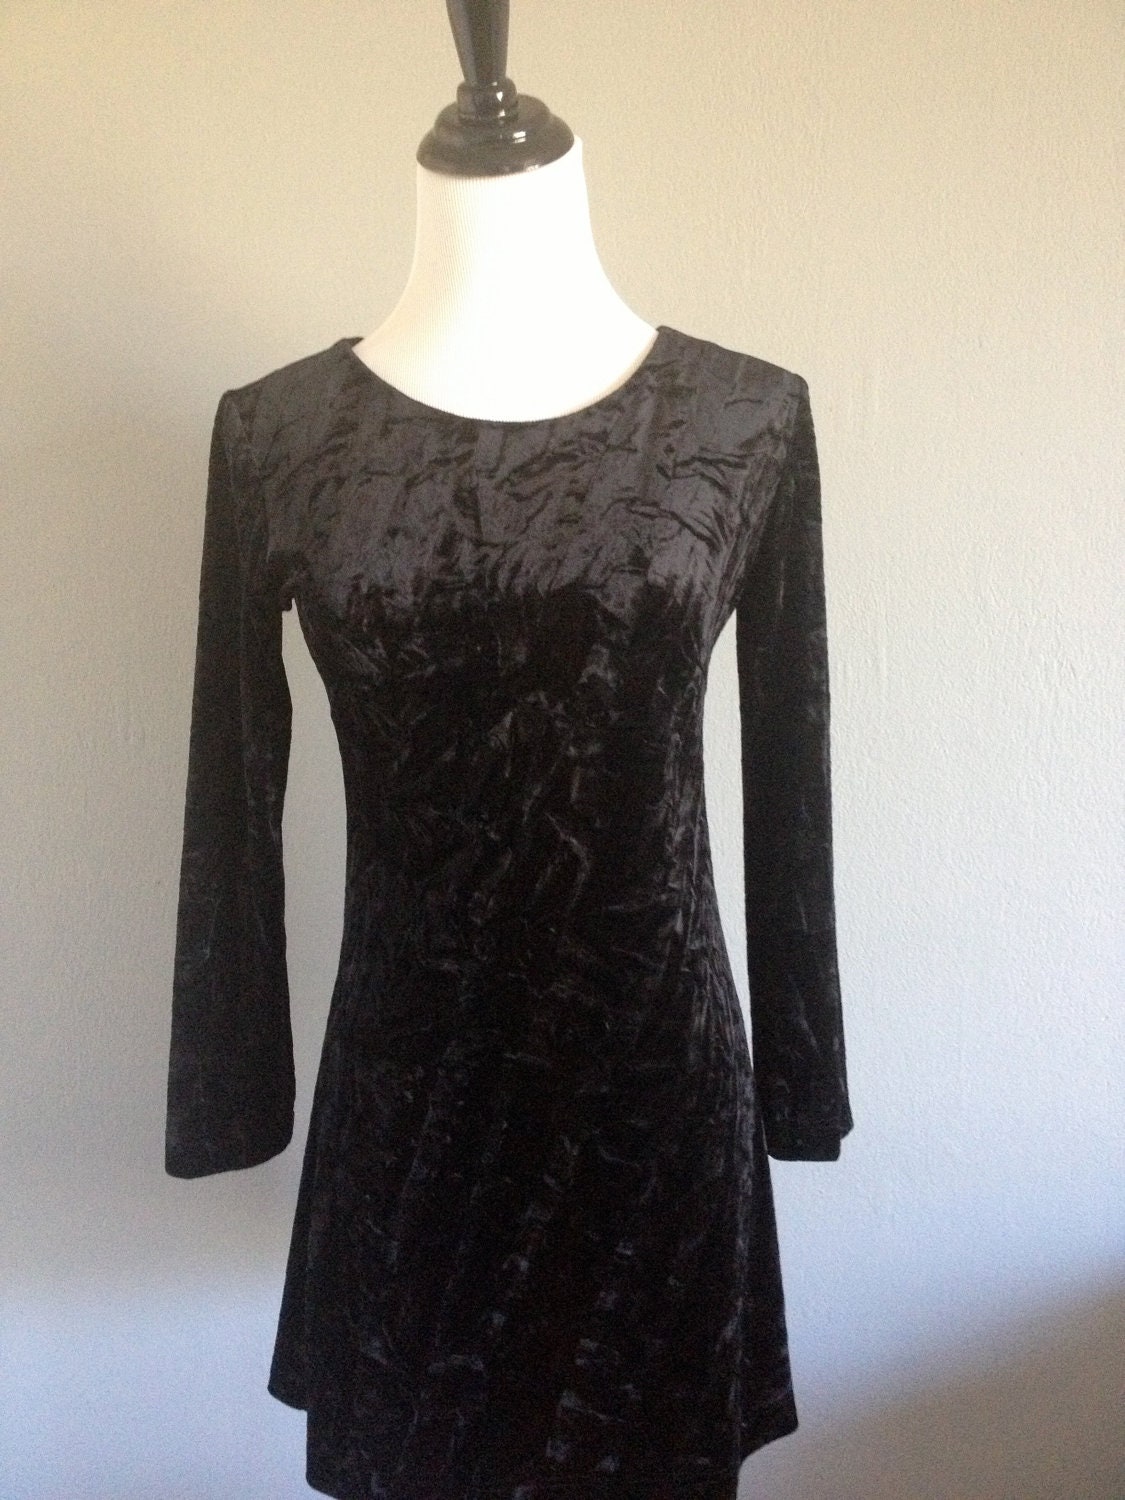 Black Crushed Velvet Mini Dress by WeAreCrimsonClover on Etsy